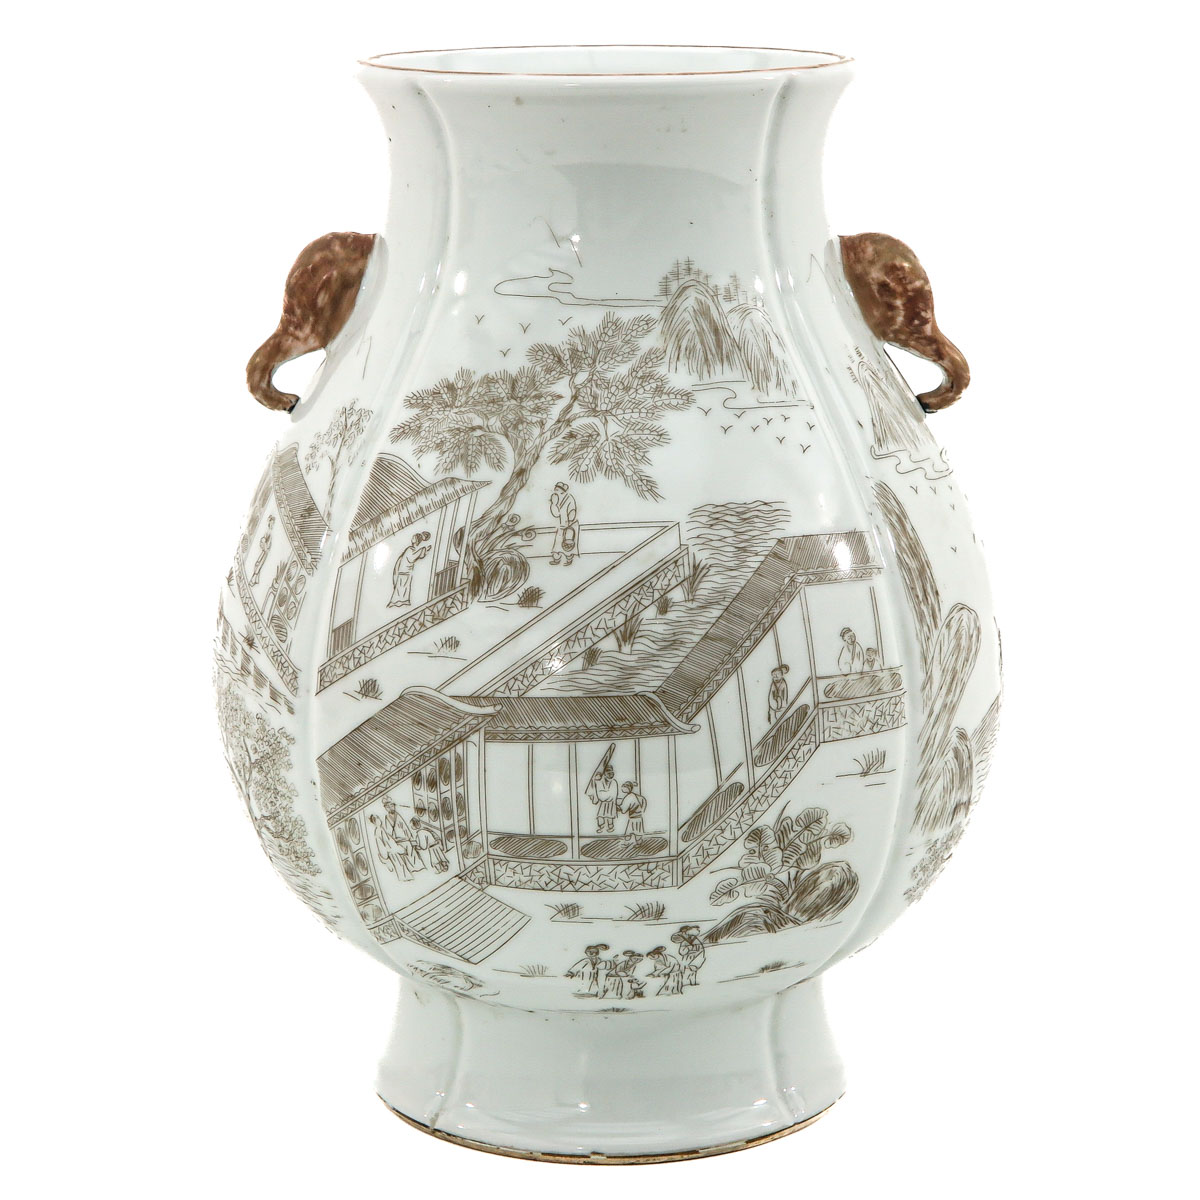 A Landscape decor Hu Vase